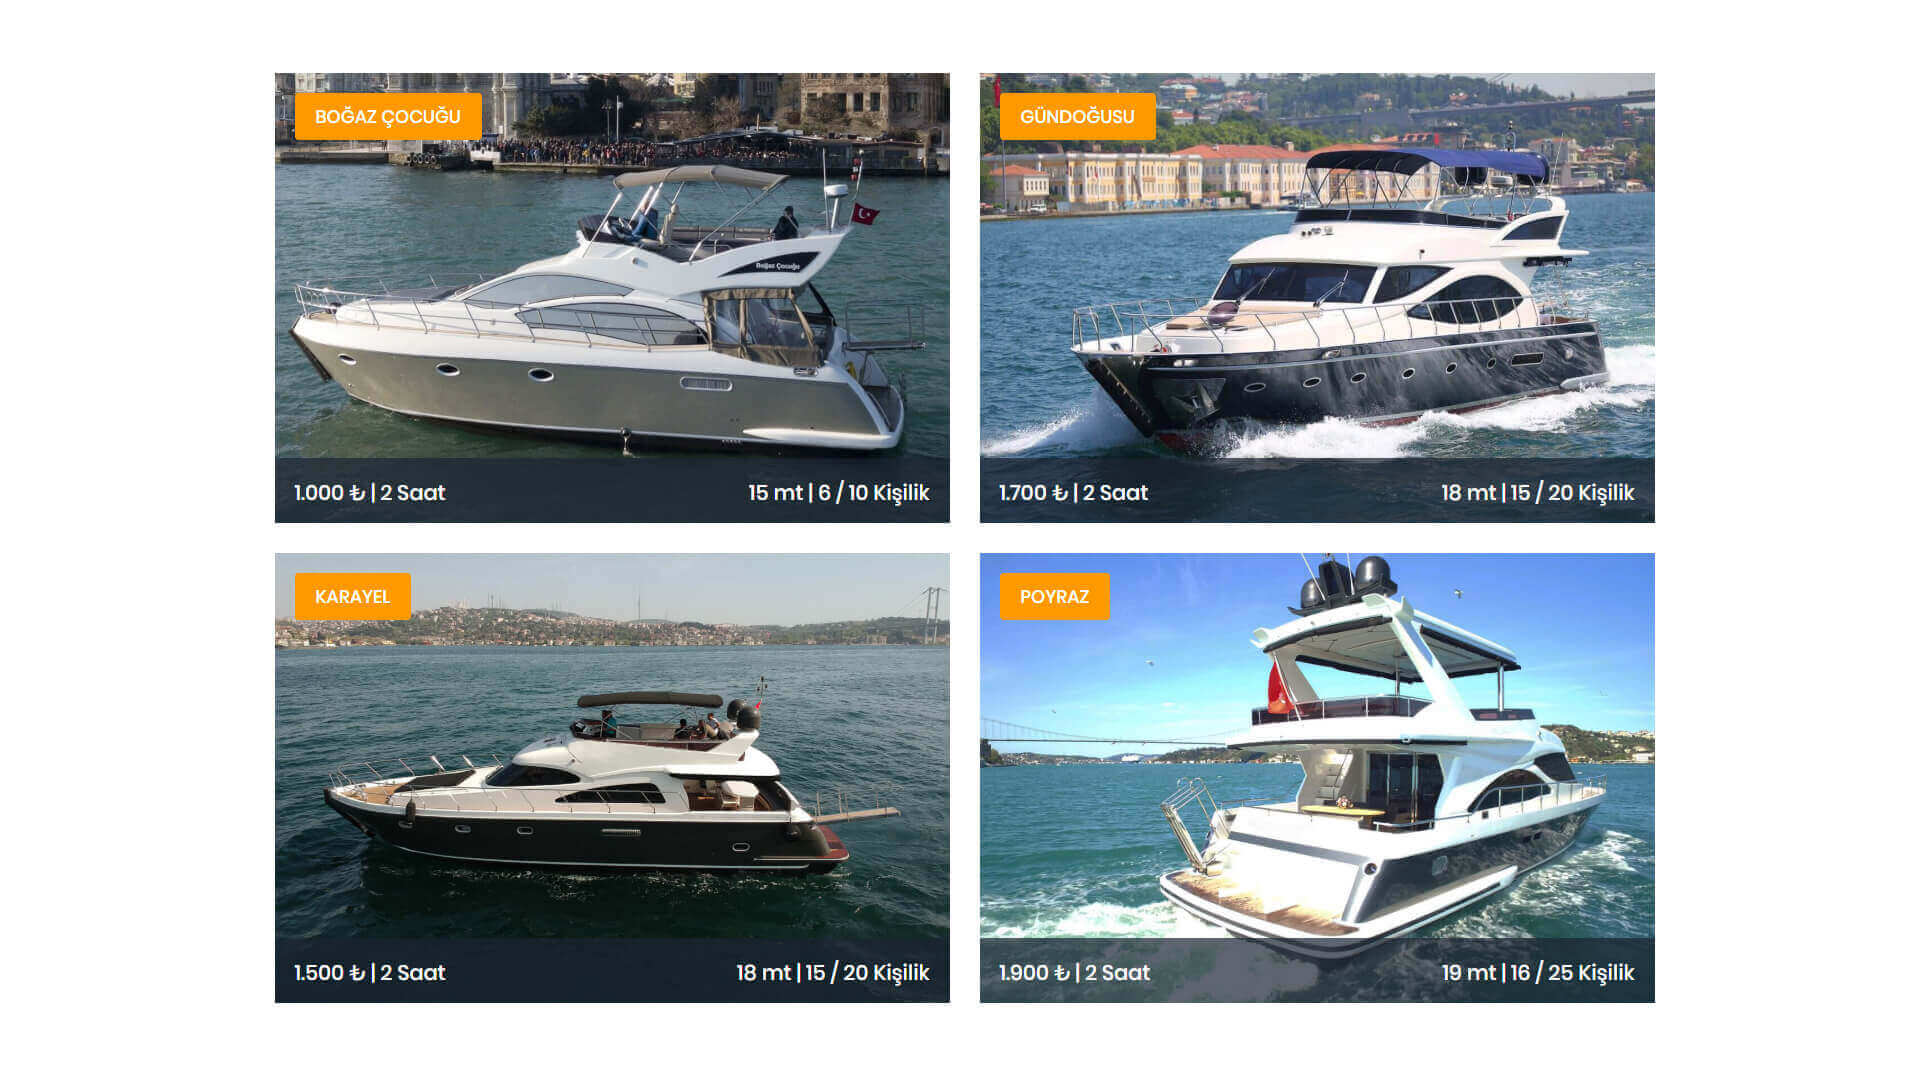 Tekne Kiralama Web Sitesi Kiralık Tekneler Sayfası